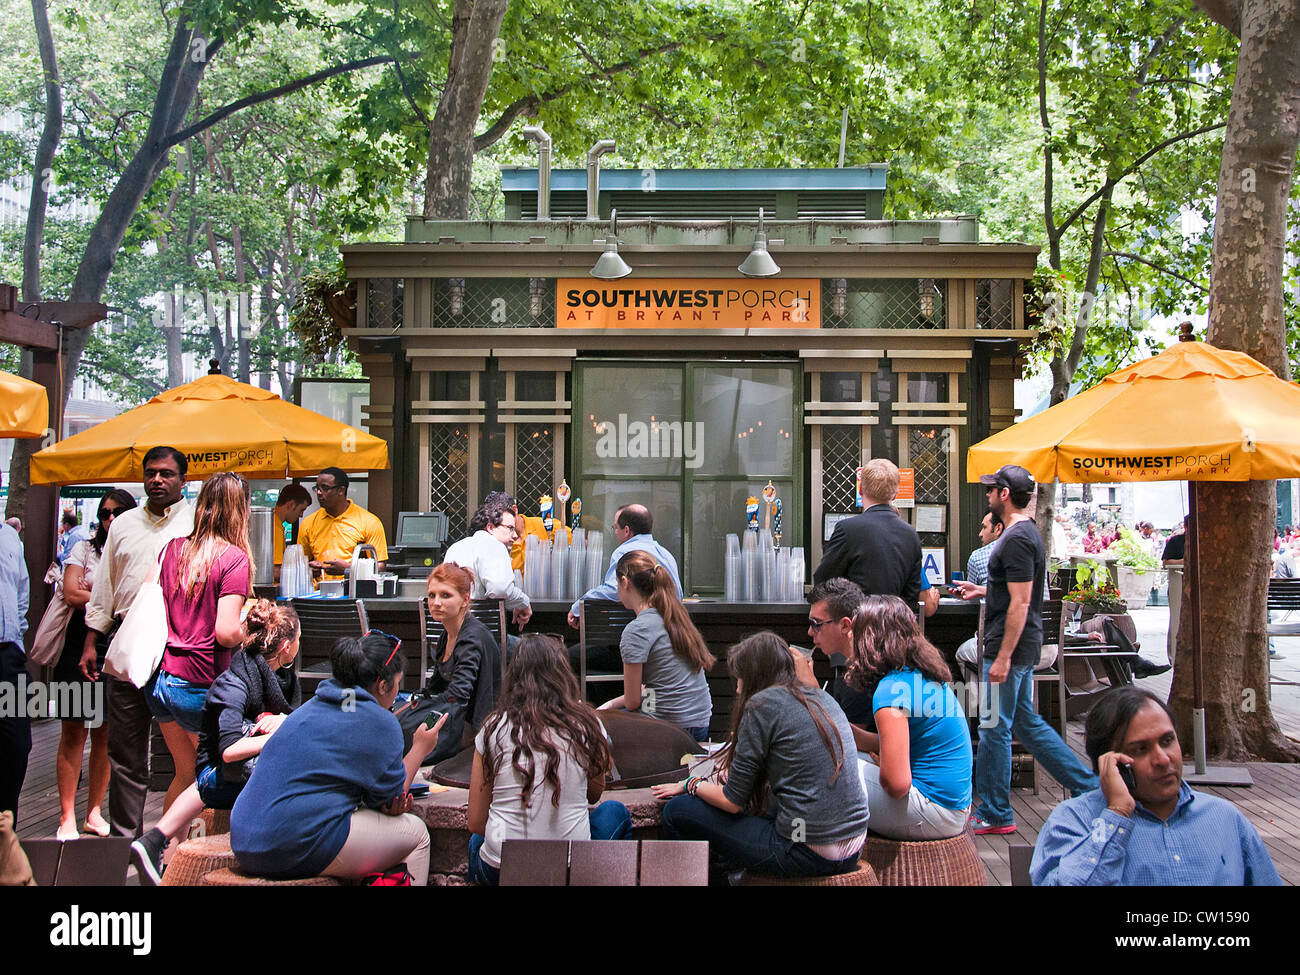 El Bryant Park Southwest Porch Cafe Bar Pub calle Acera de Manhattan, Nueva York, Estados Unidos de América Foto de stock